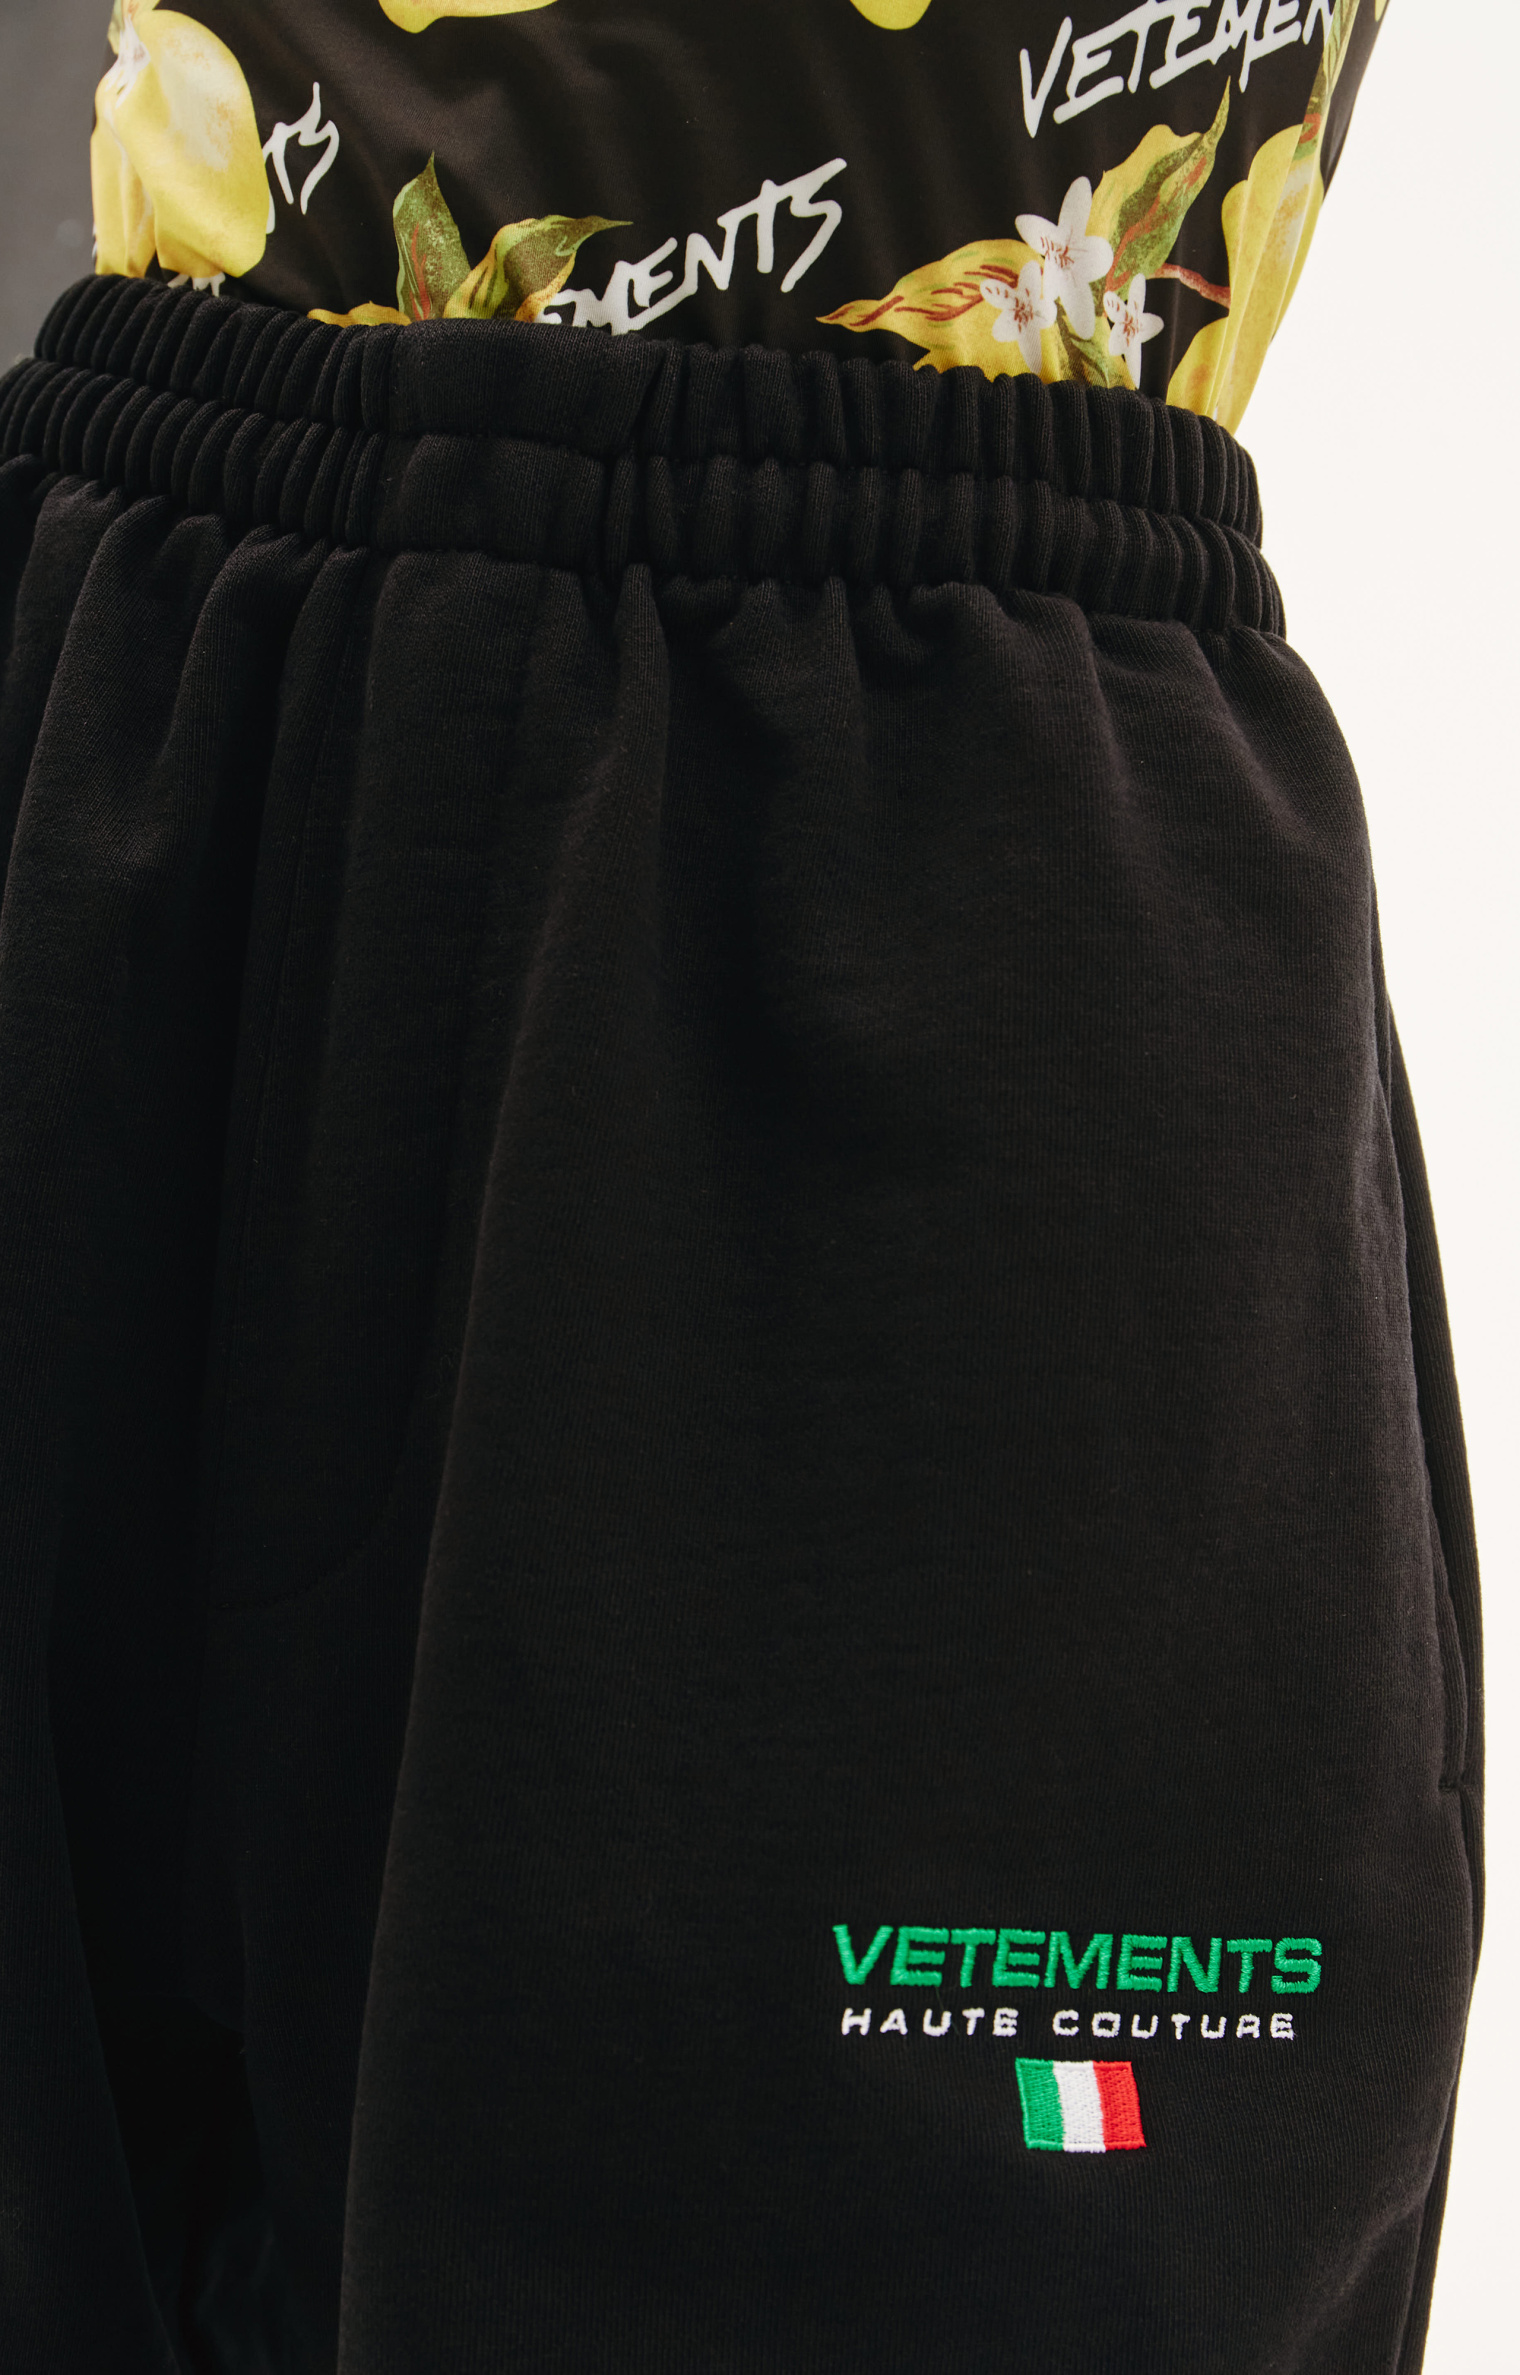 VETEMENTS Haute Couture Logo Sweatpants